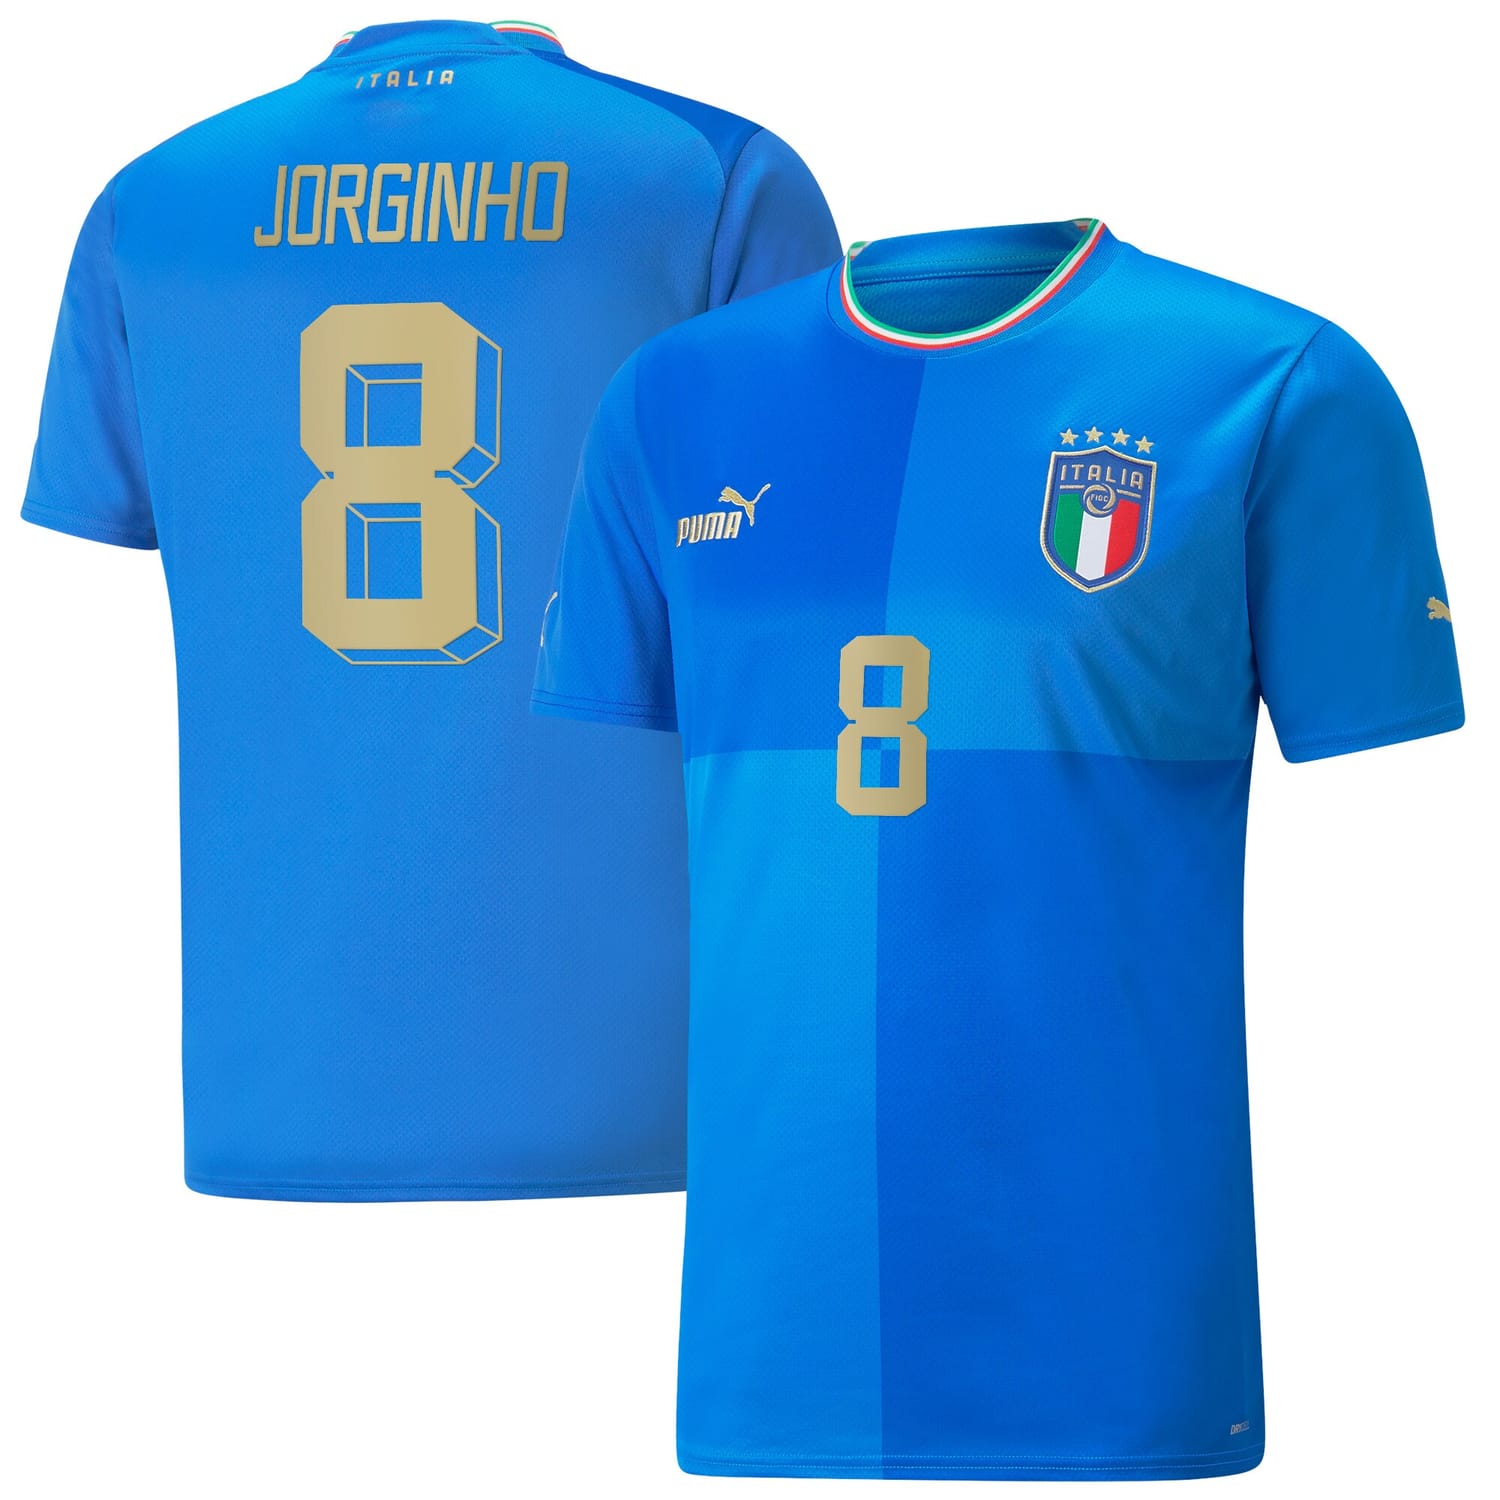 Italy National Team Home Jersey Shirt Blue 2022-23 player Jorginho printing for Men